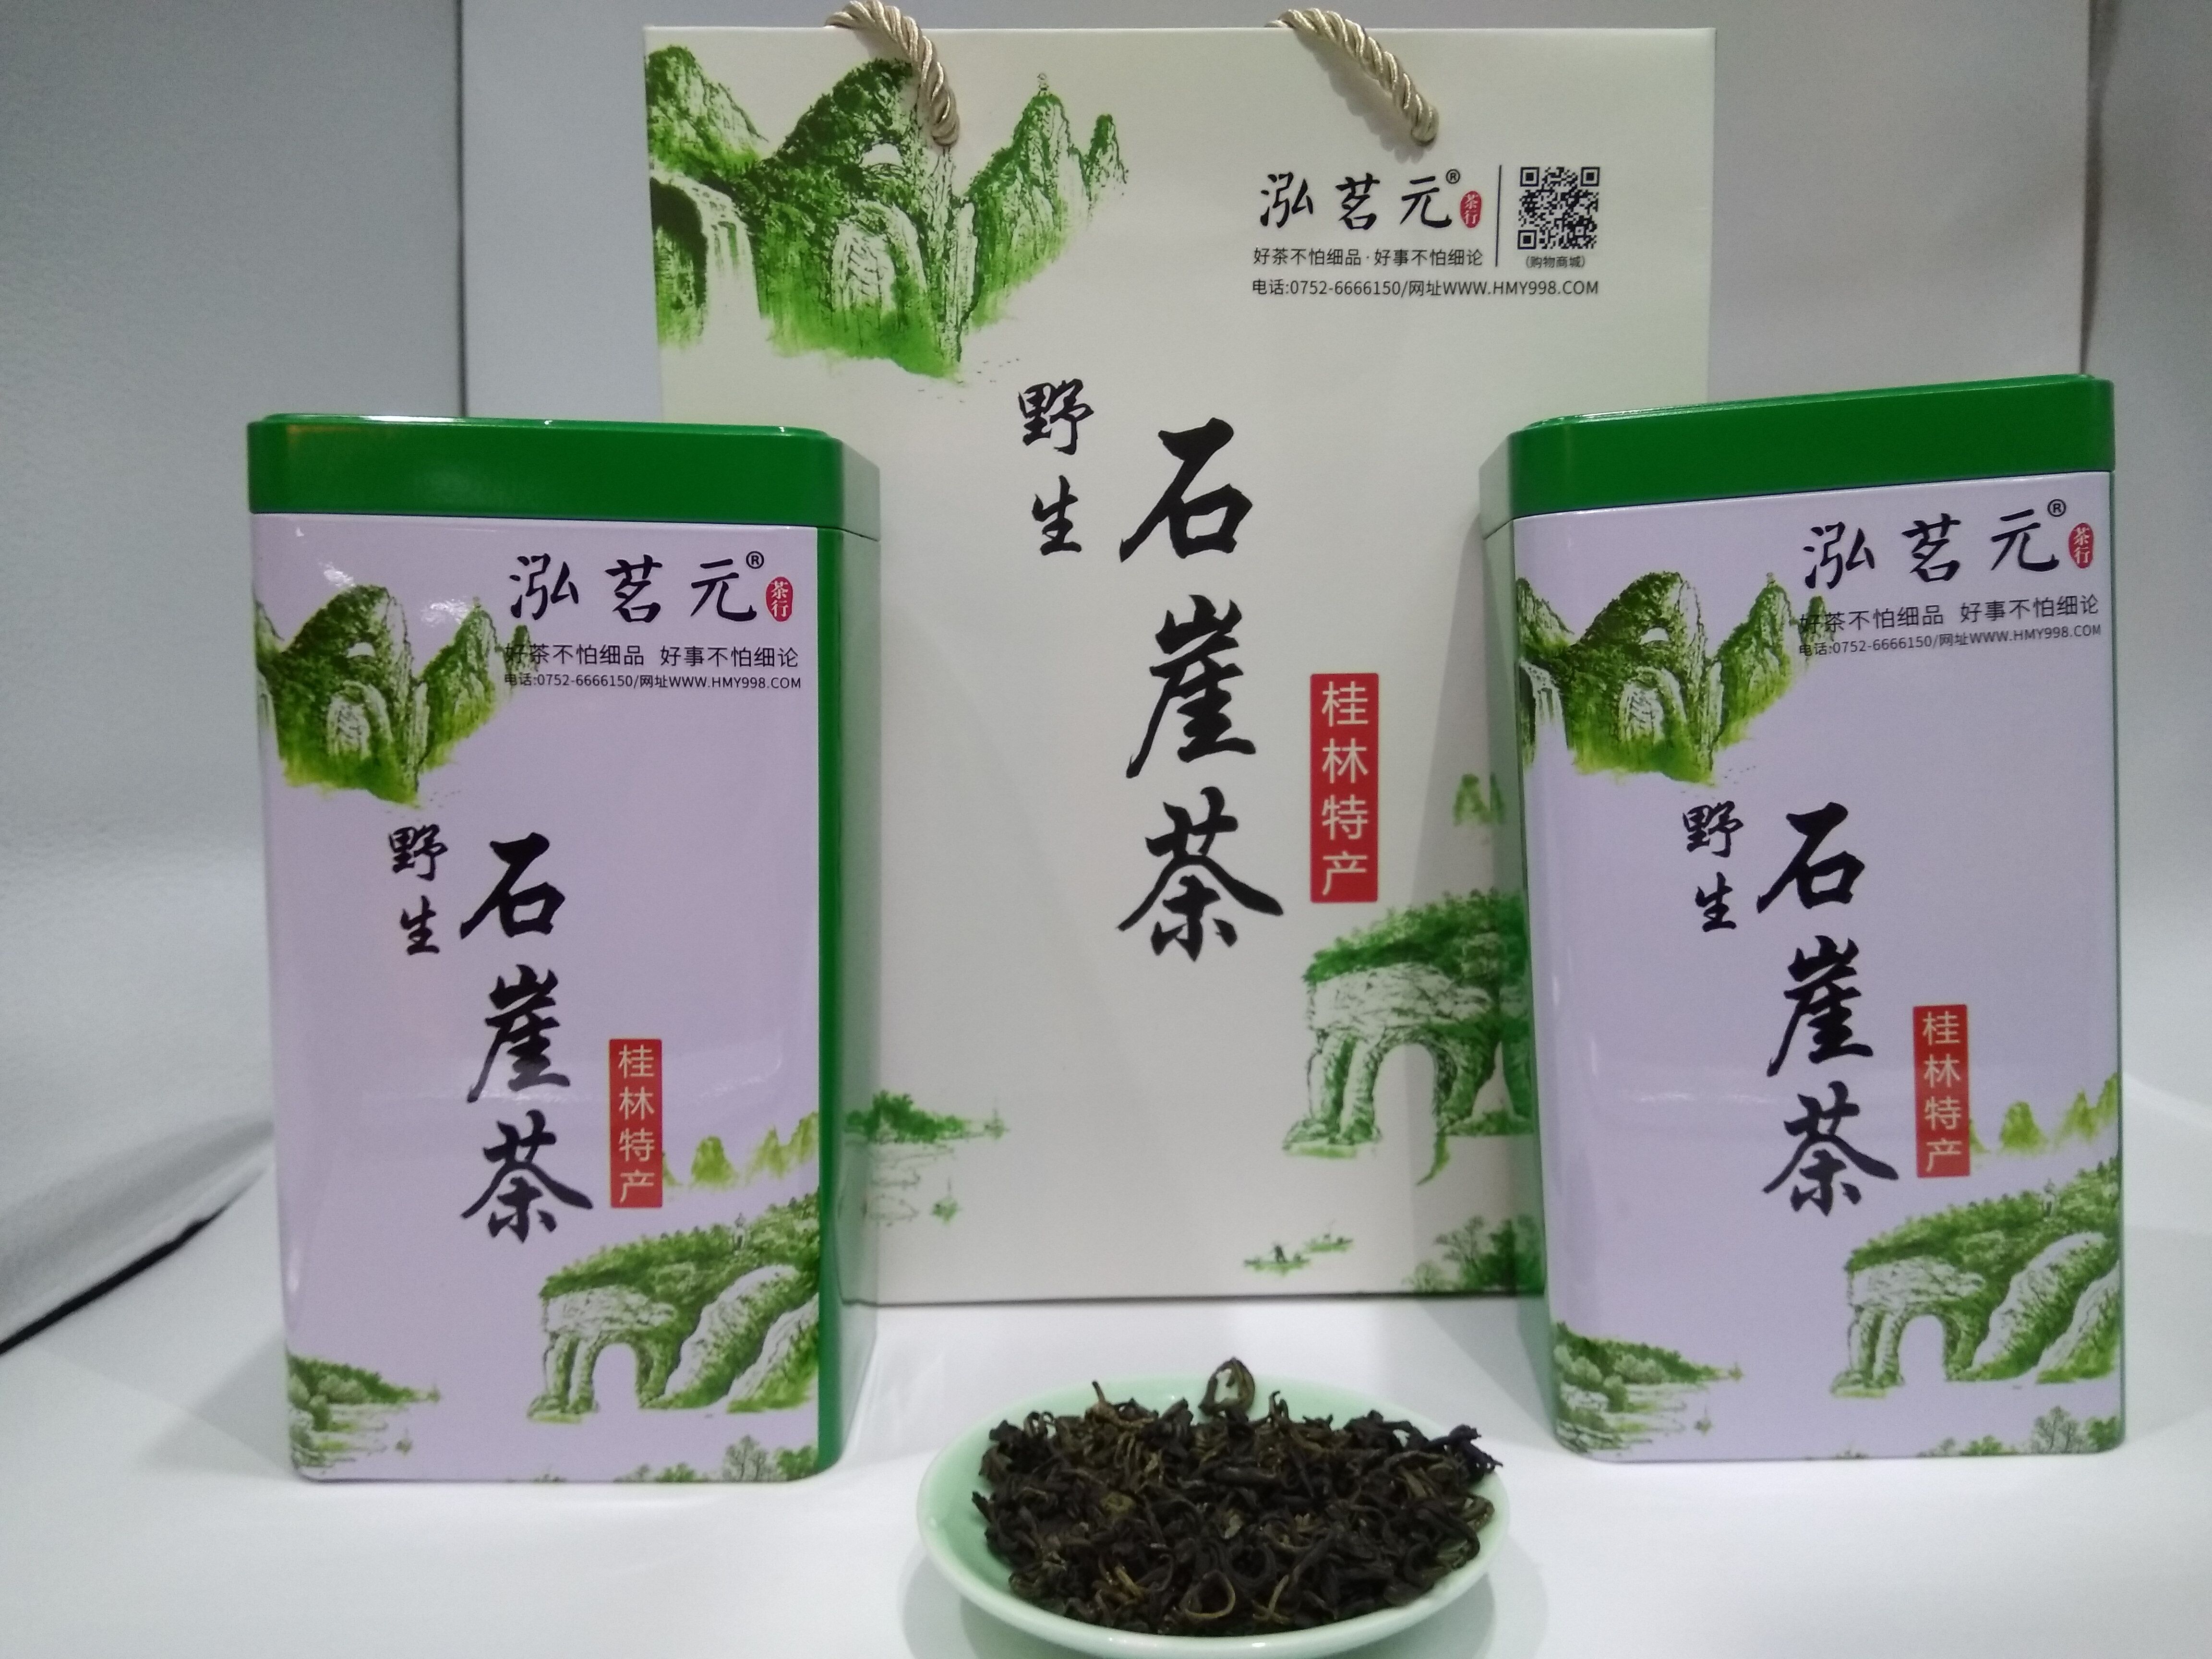 广西云雾石壁桂林神仙茶之称的手工绿茶 清香型石崖茶明前野生绿